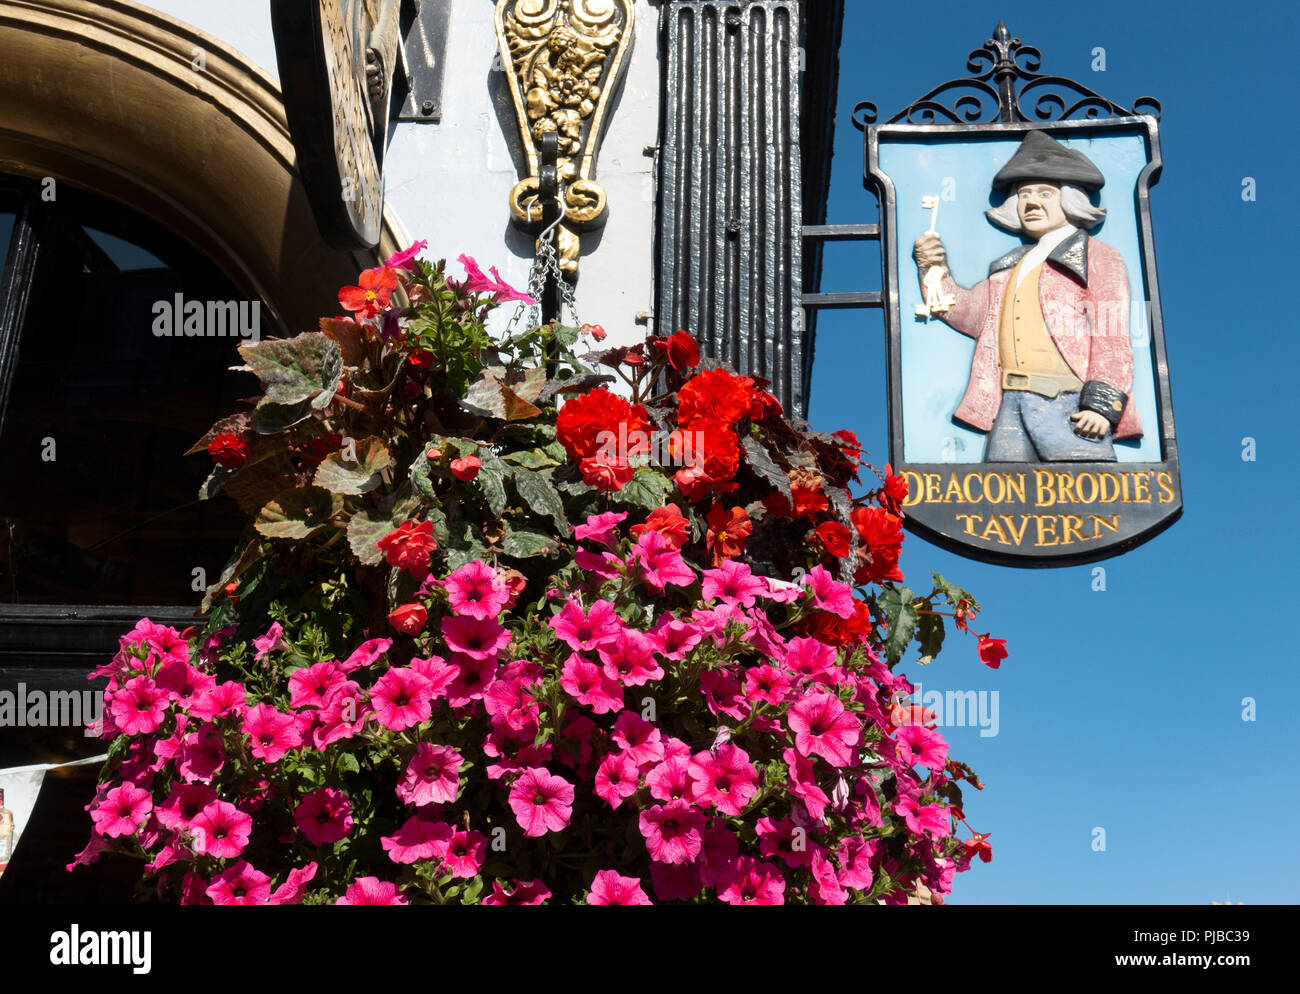 Il diacono Brodie's pub segno e appeso cesto fiorito su Edinburgh Royal Mile in Scozia, Regno Unito Foto Stock